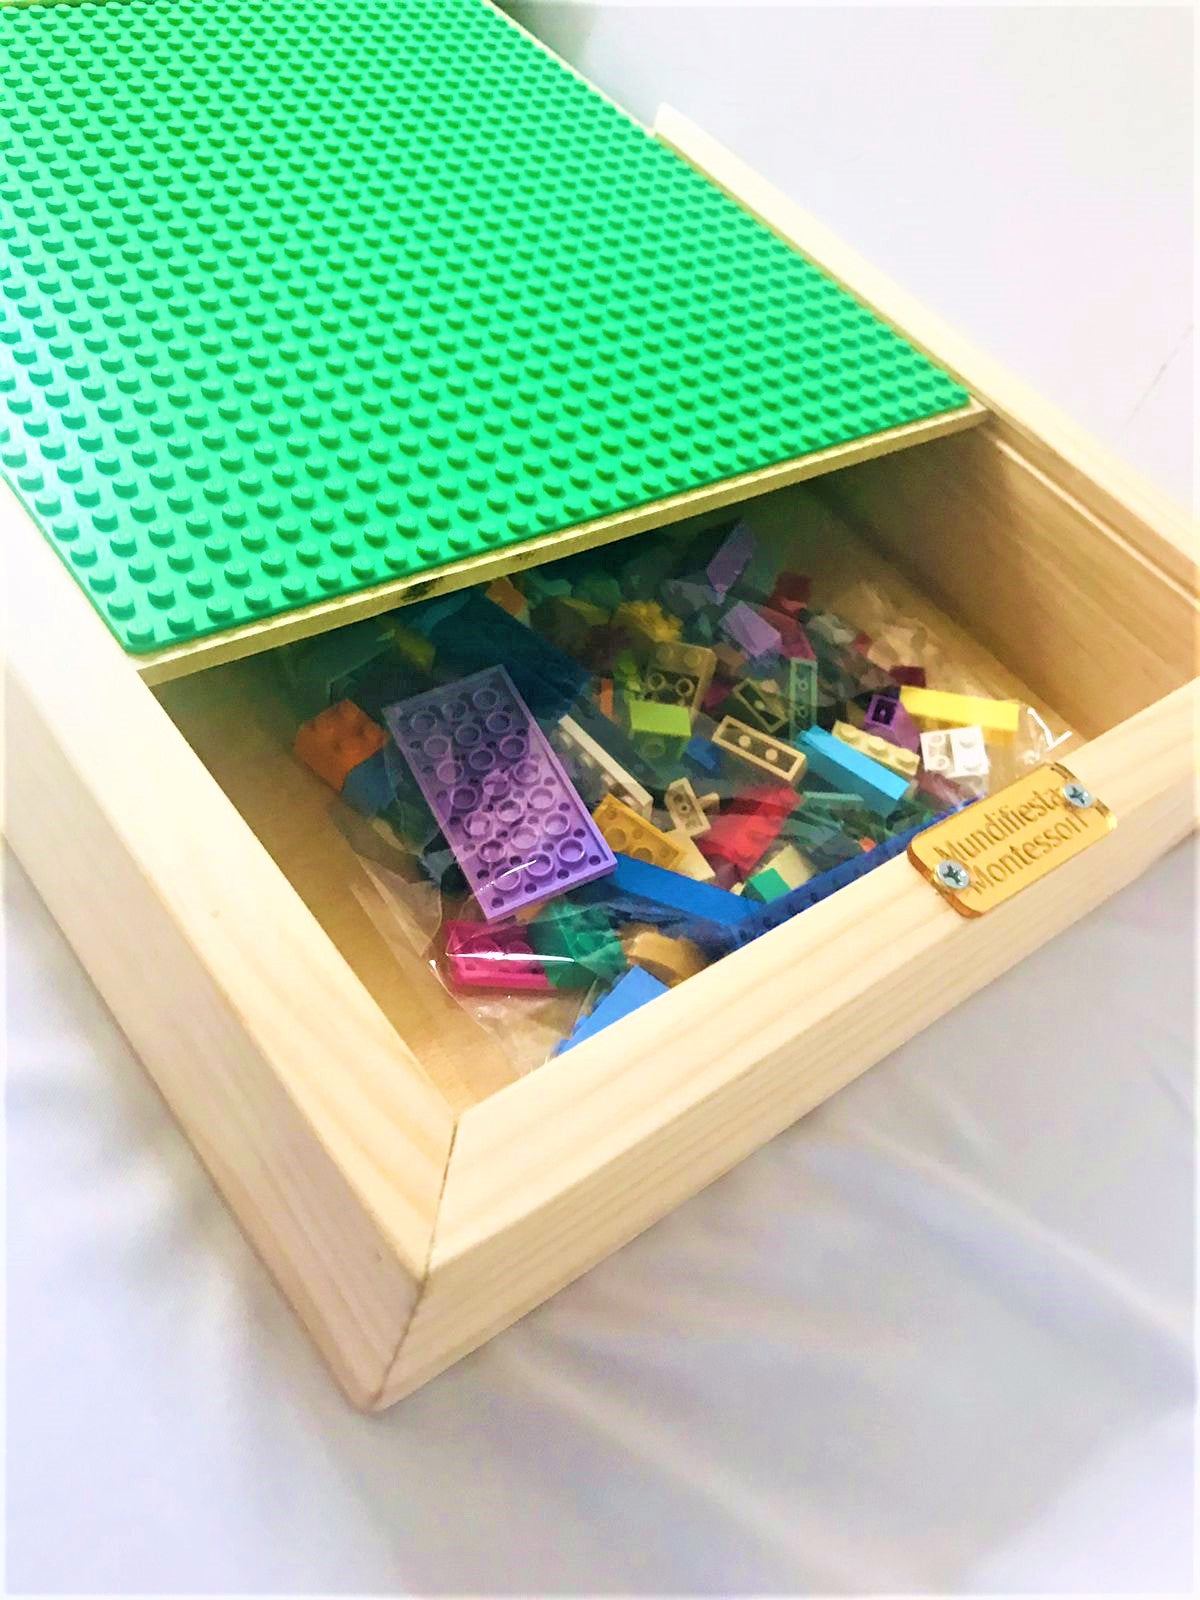 Lixajary Home - Mesa maletín para Lego 🤩💼 Pedido especial